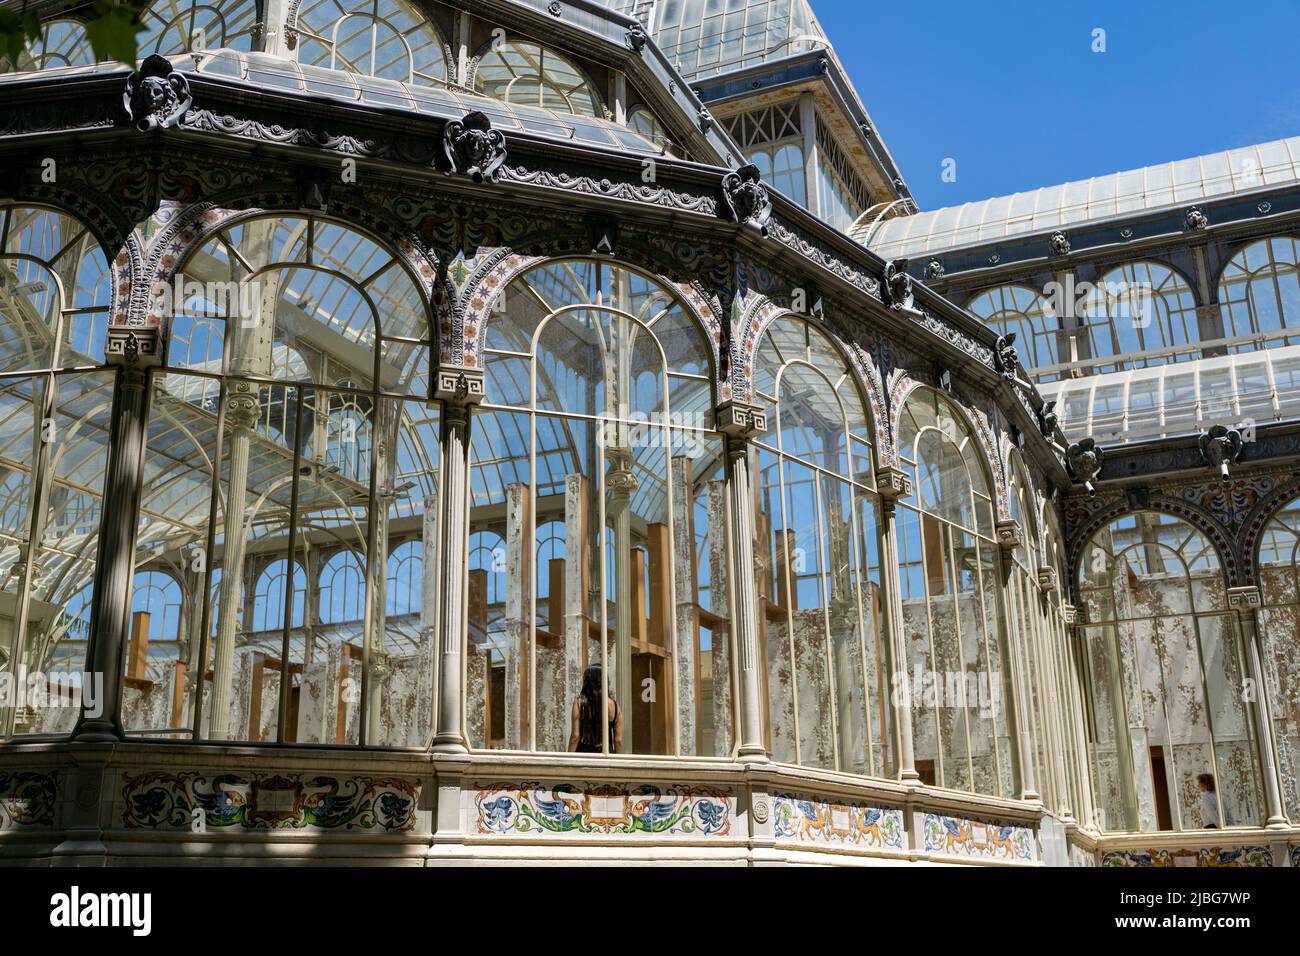 Le Palais de verre du Parc El Retiro de Madrid par l'architecte Ricardo Velázquez Bosco. Un site classé au patrimoine mondial de l'UNESCO. Propriété du musée Reina Sofía. Banque D'Images